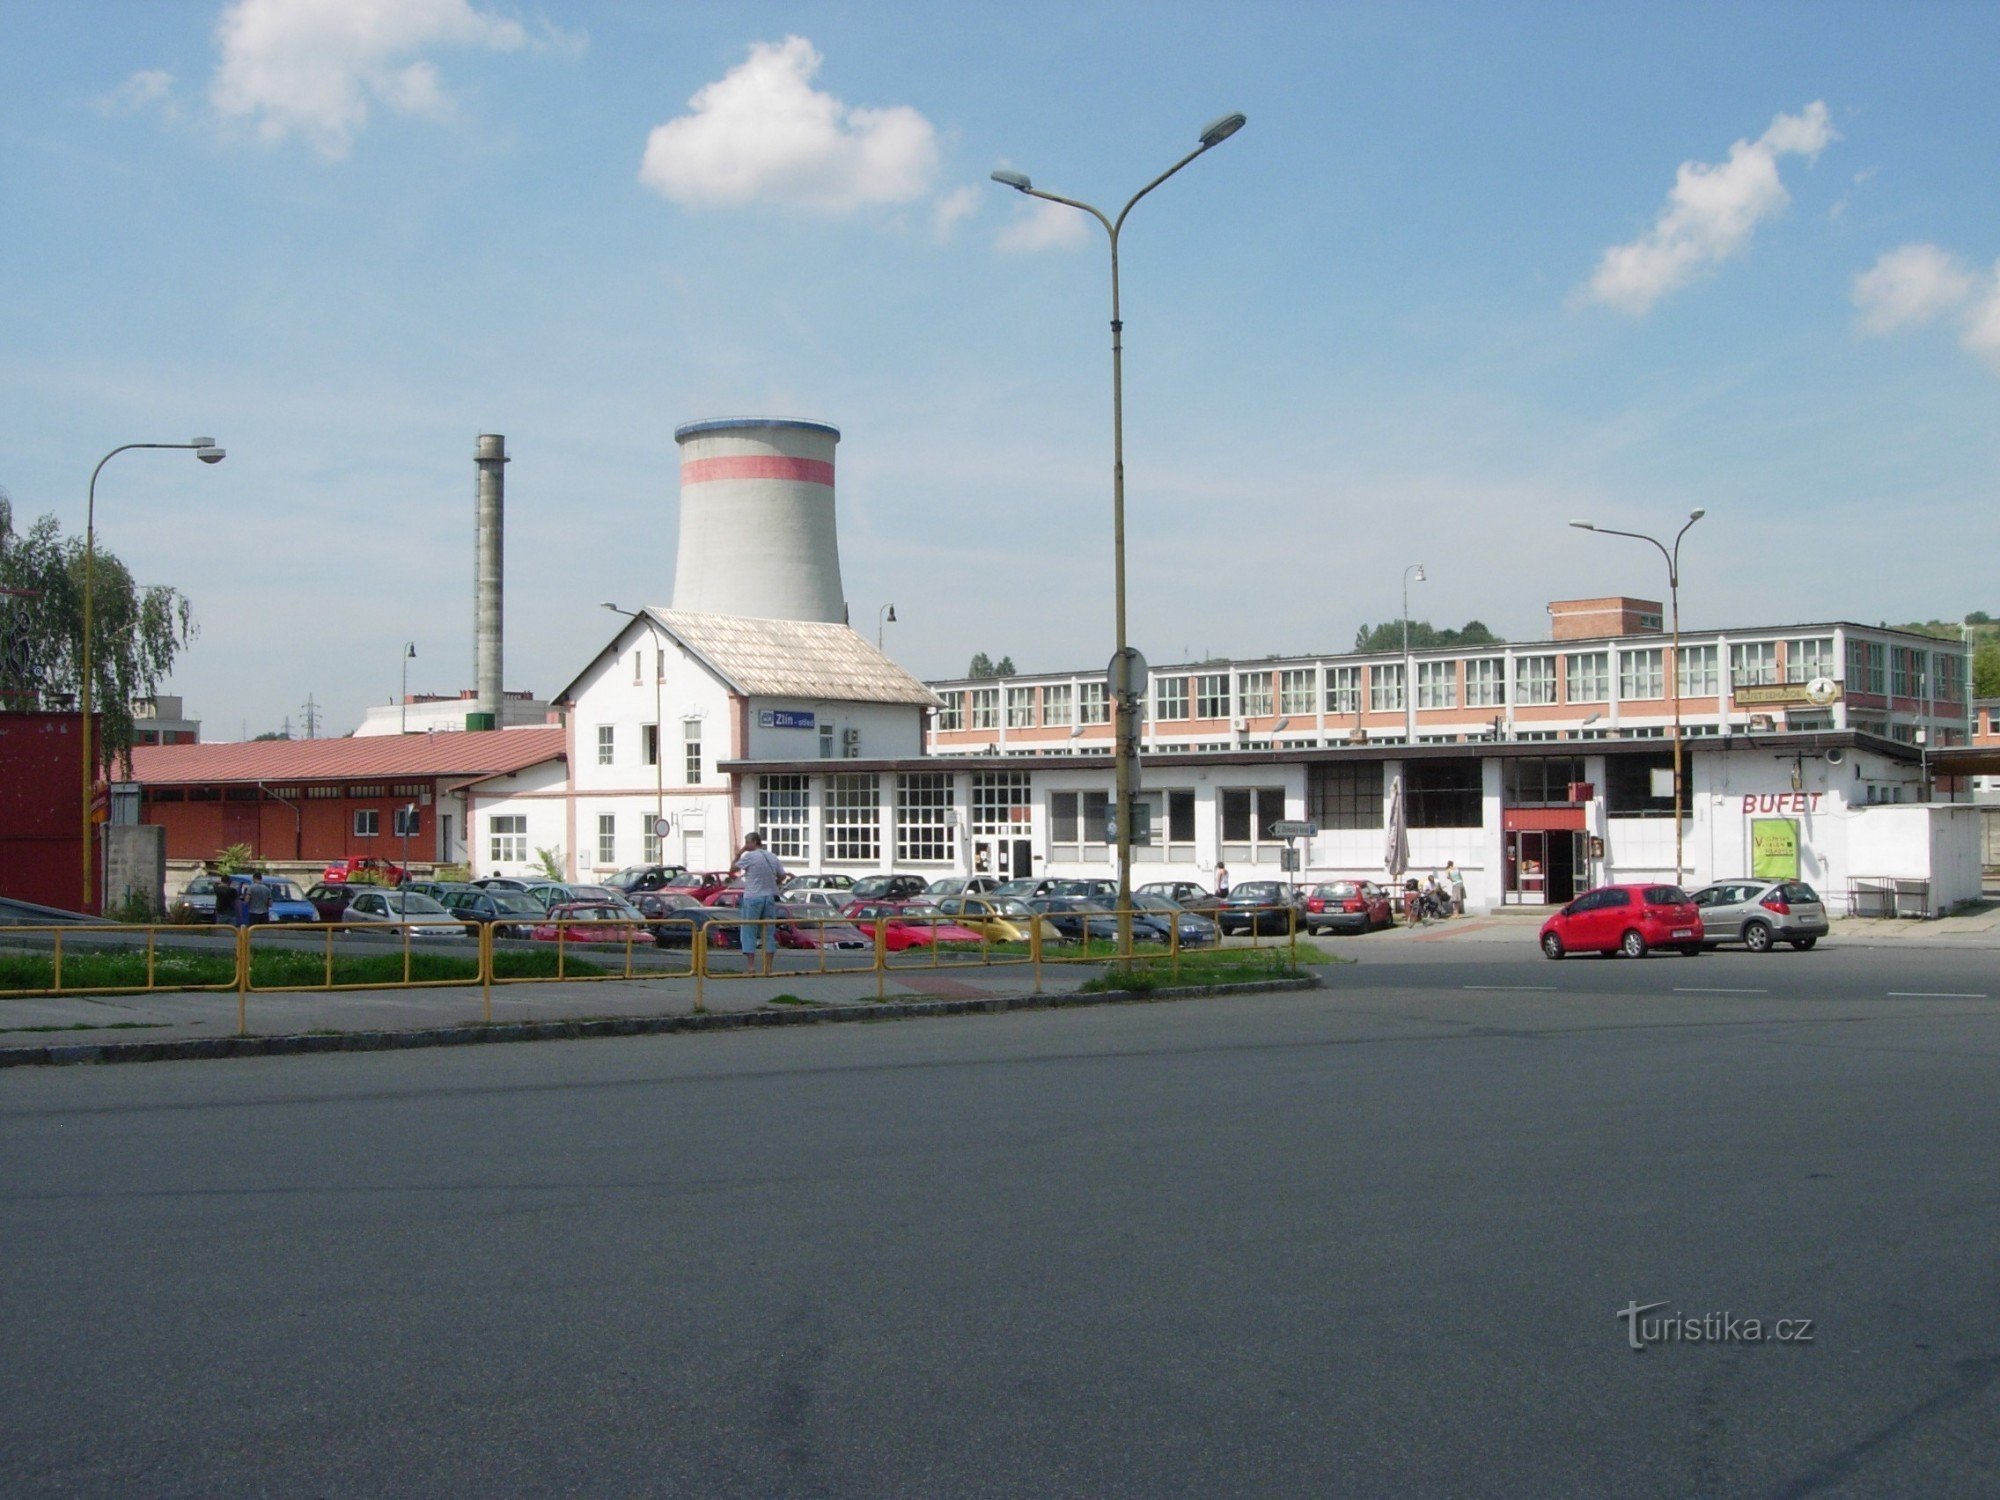 The "story" story building of ČD Zlín